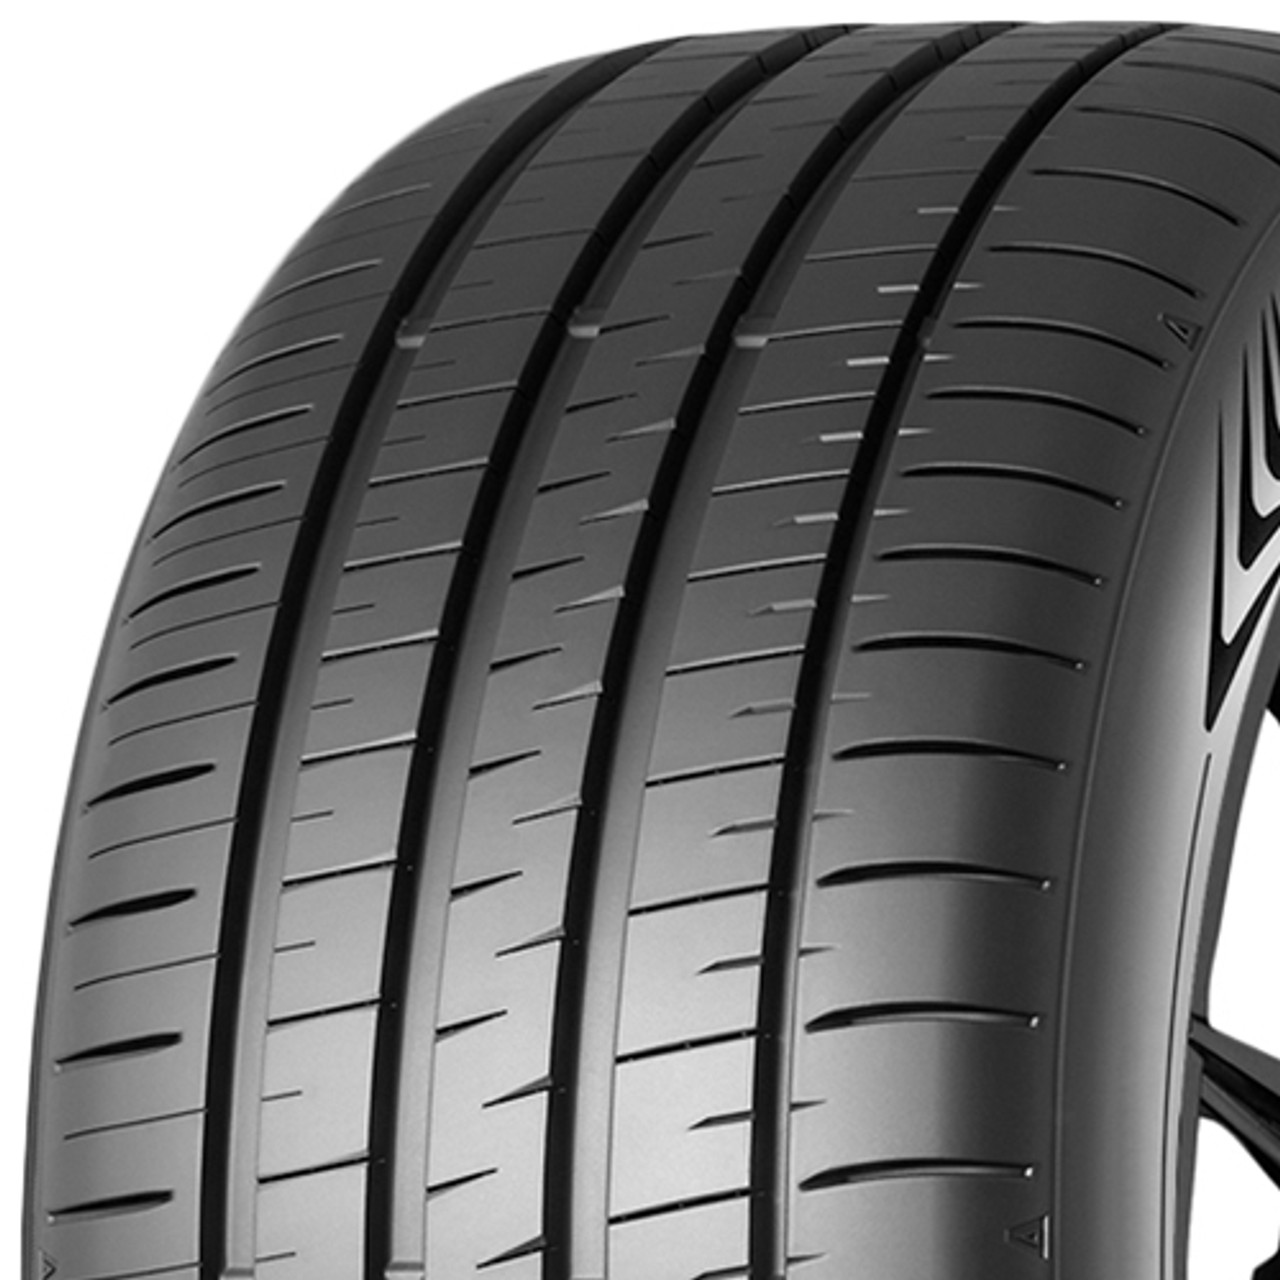 Dunlop 265/35R18 XL Maxx Plus Tire 352789 SP 060 - 97Y Wall Black ShopCWO Sport